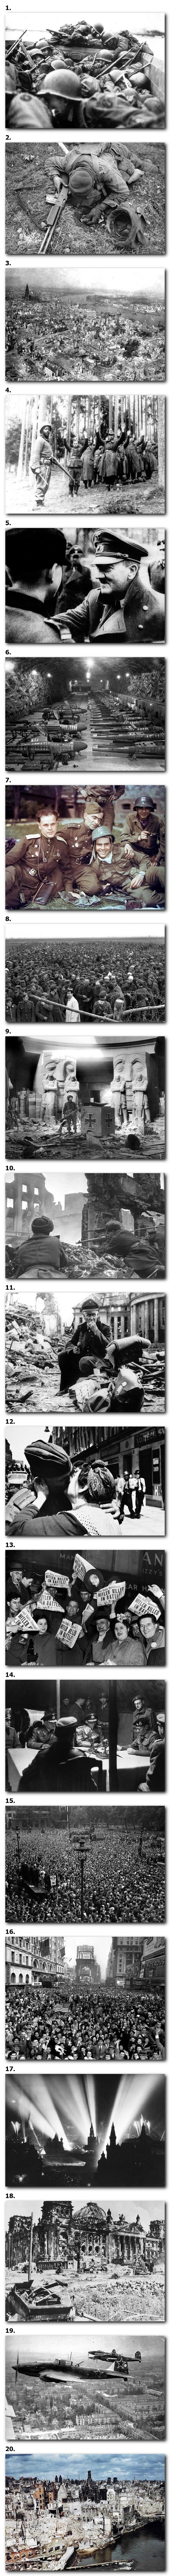 Les derniers jours de l'Allemagne nazie, 1945 #2